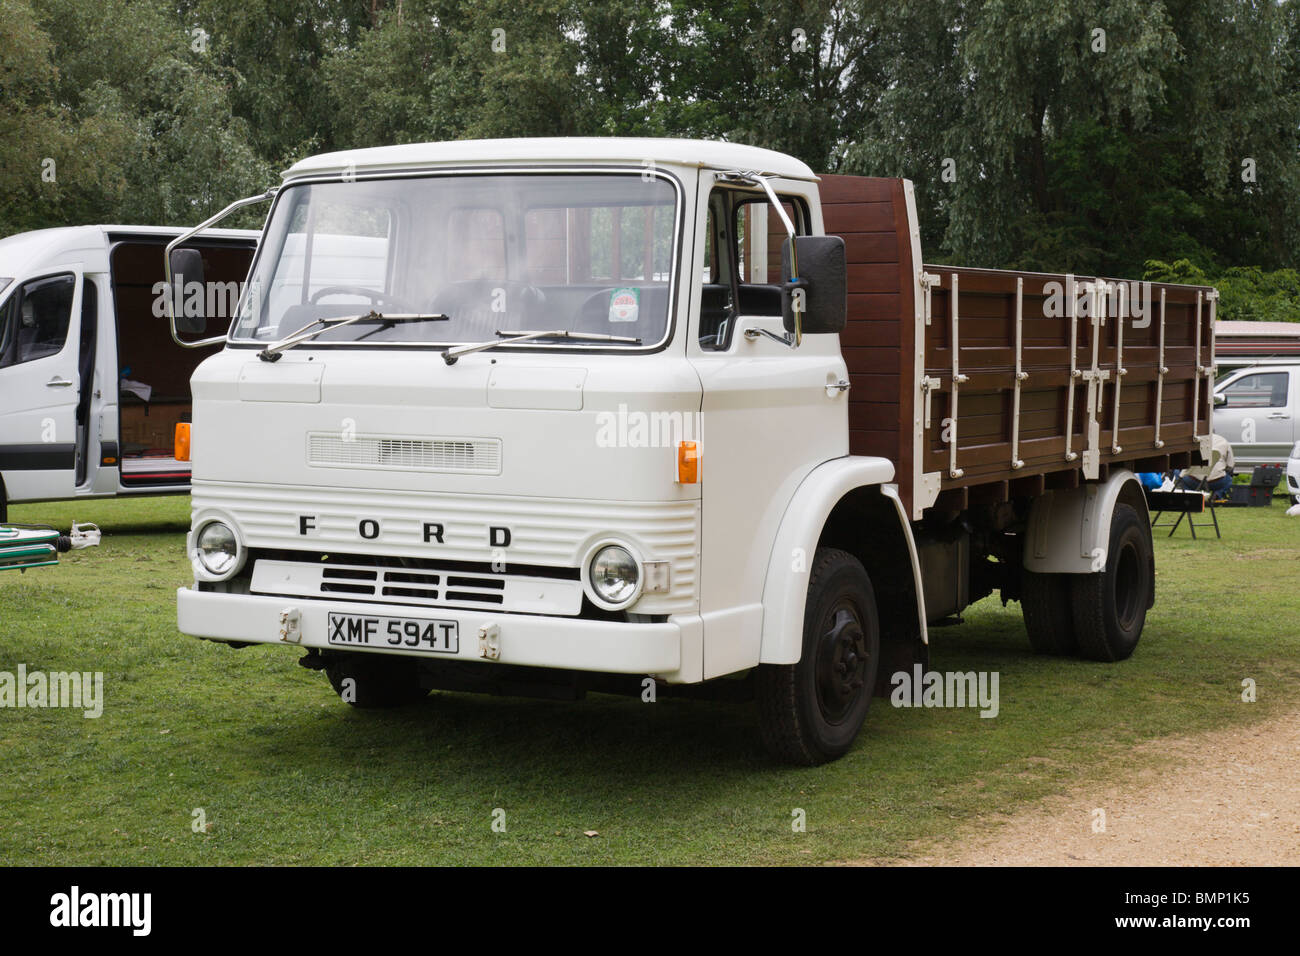 Ford lorry immagini e fotografie stock ad alta risoluzione - Alamy